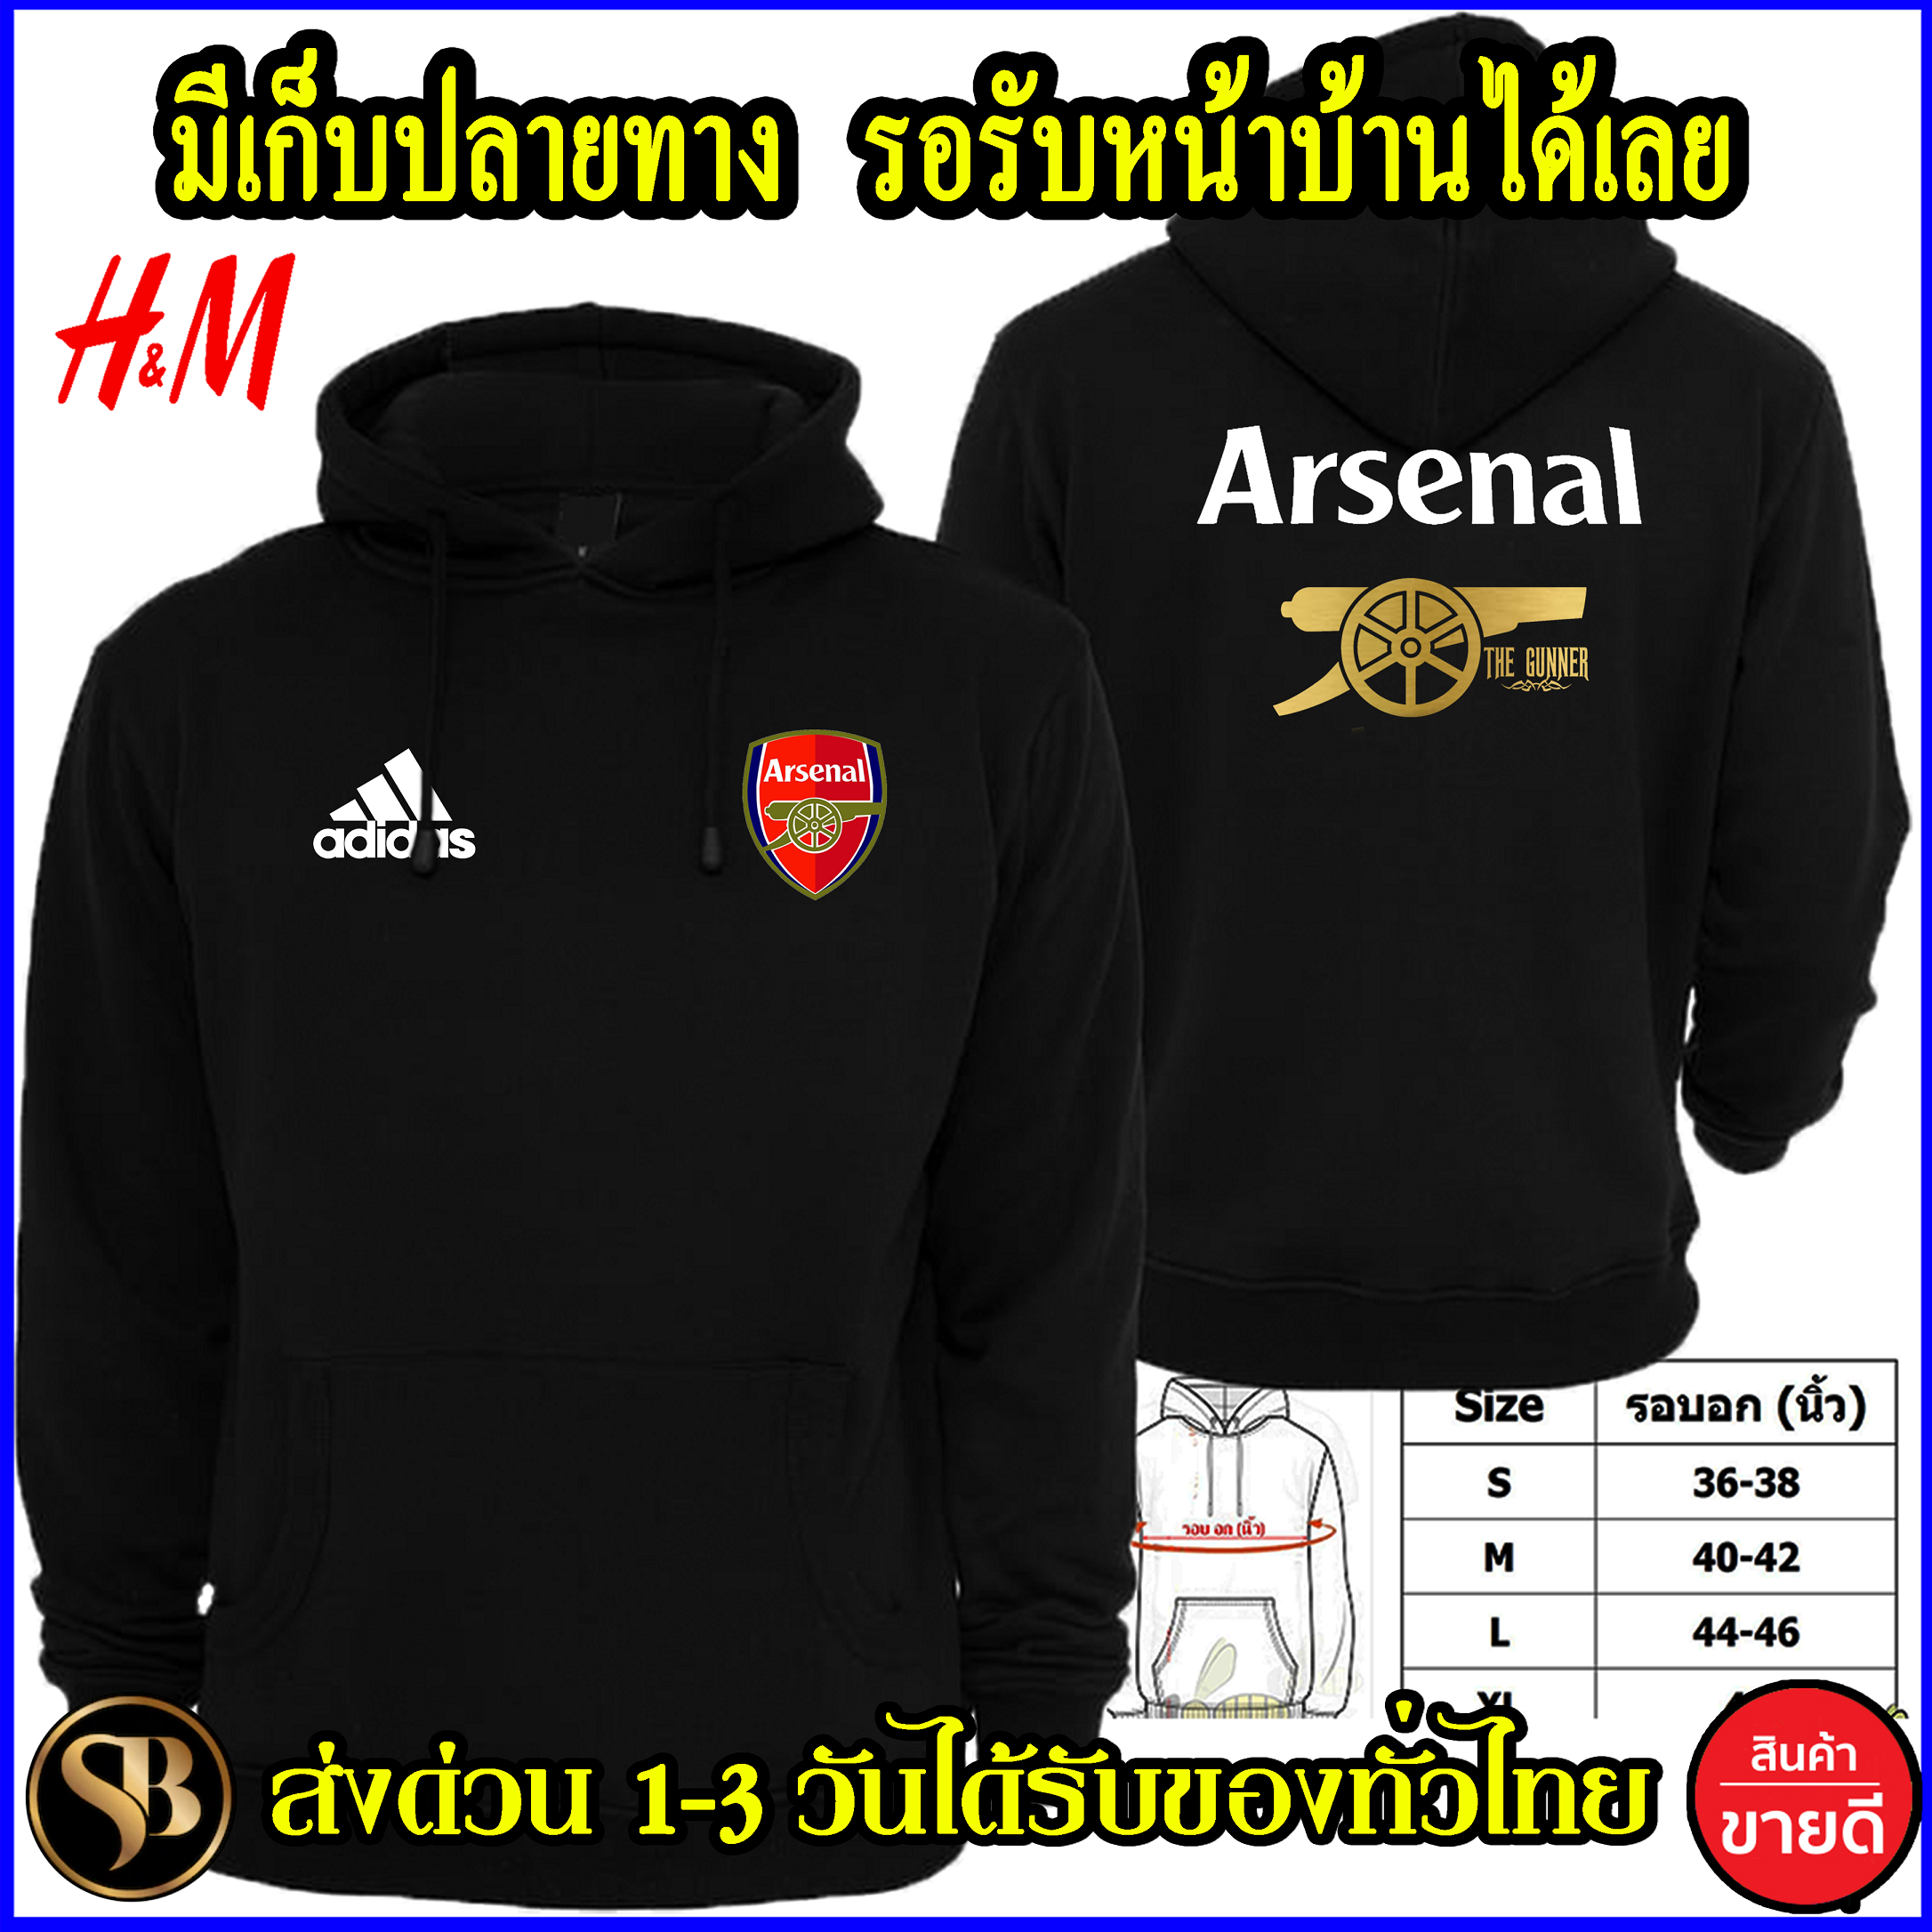 อาร์เซนอล เสื้อฮู้ด Arsenal งานH&M โลโก้สีสด แบบซิปสวม สกรีนแบบเฟล็ก PU สวยสดไม่แตกไม่ลอก ส่งด่วนทั่วไทย